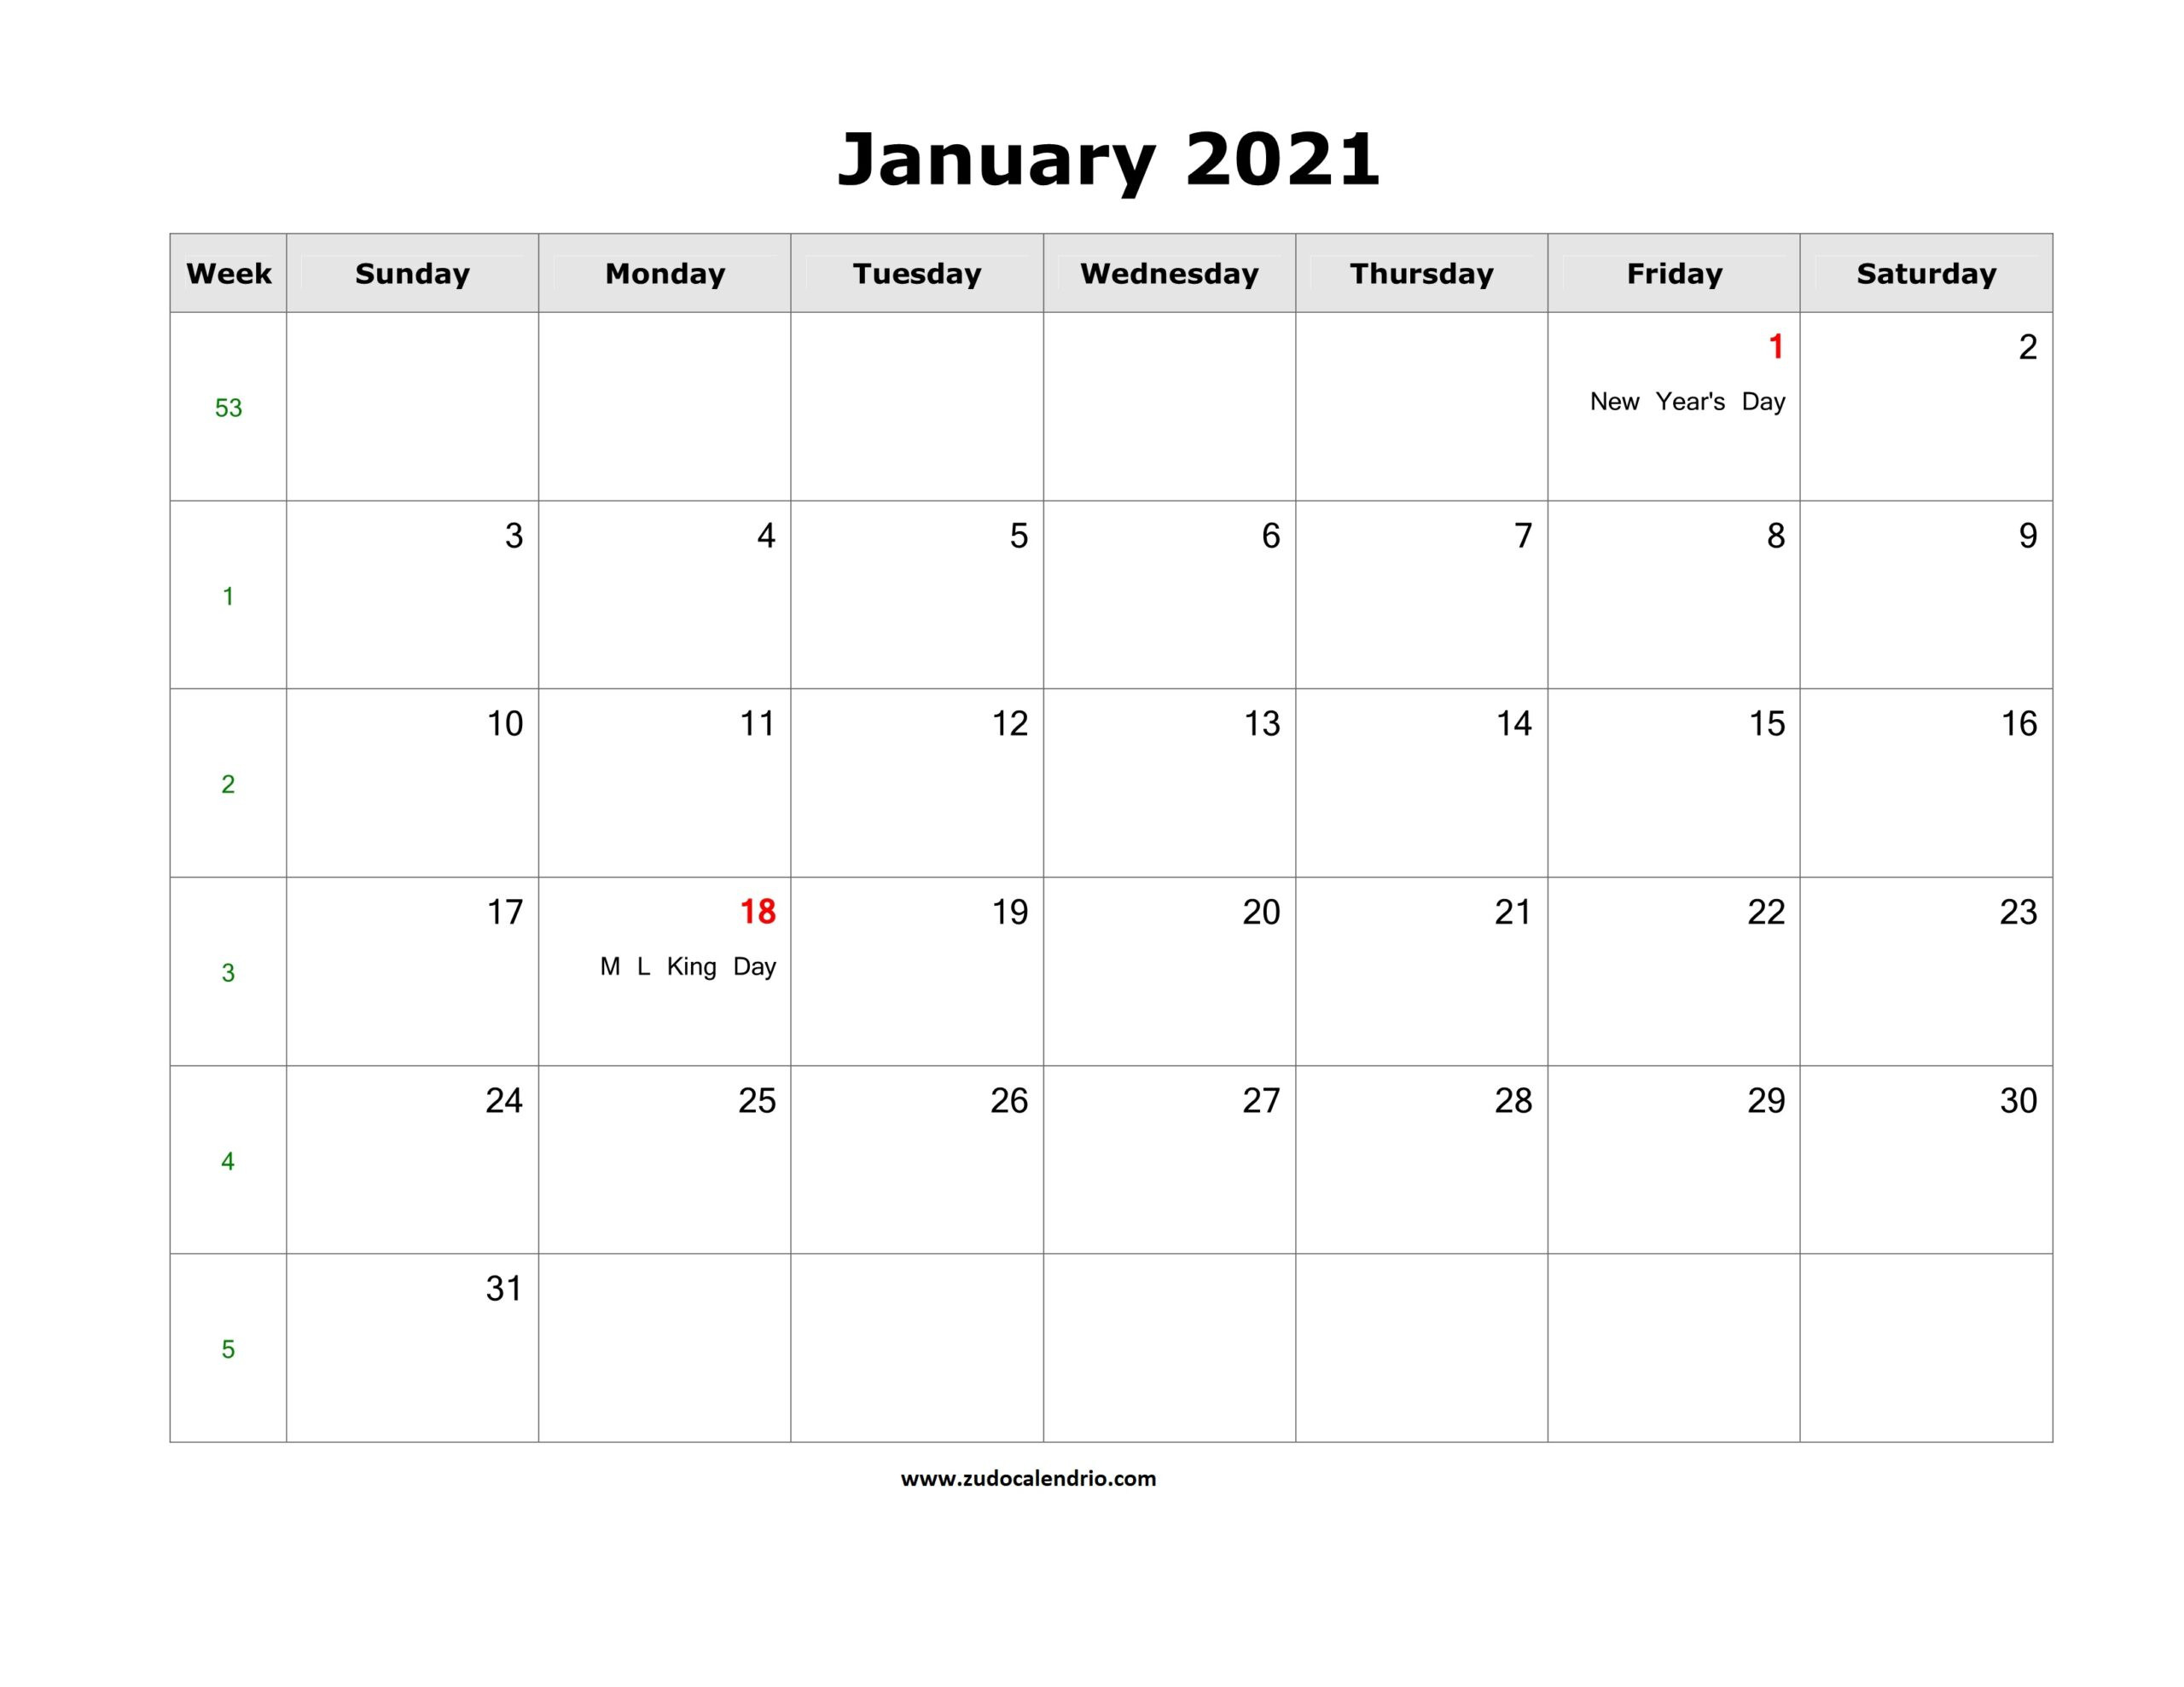 Printable January 2021 Calendar With Holidays | Zudocalendrio-Calendar 2021 2021 Calendar